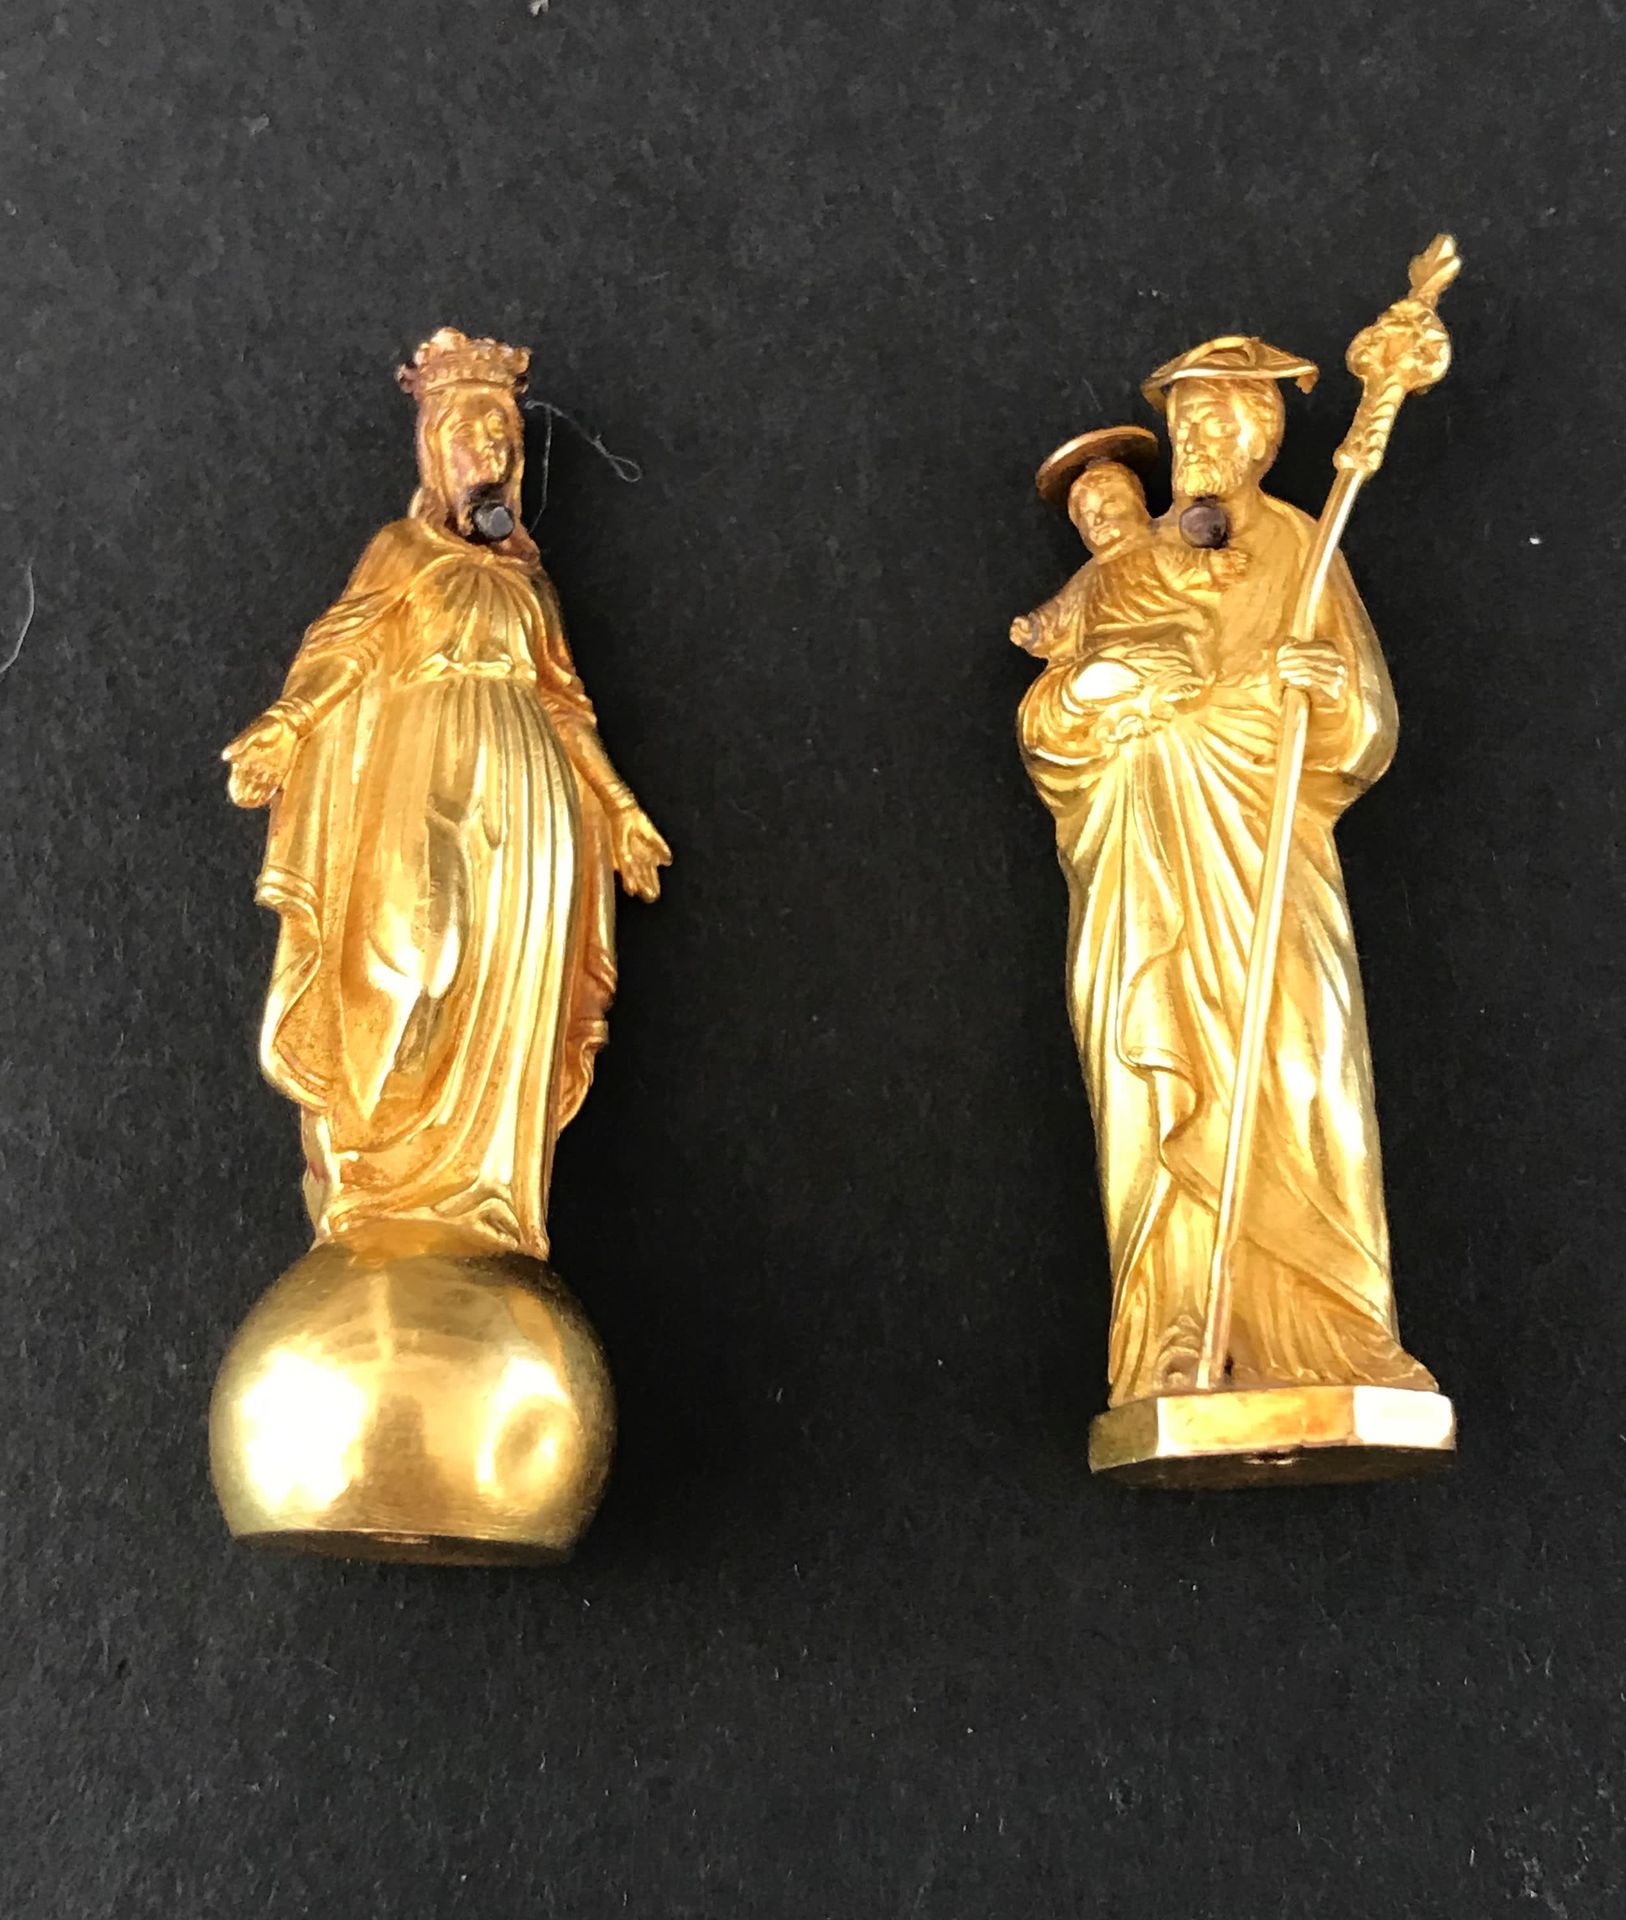 Null 两件小挂件拍品

黄金材质

代表圣母和圣克里斯托弗。

重量：10克